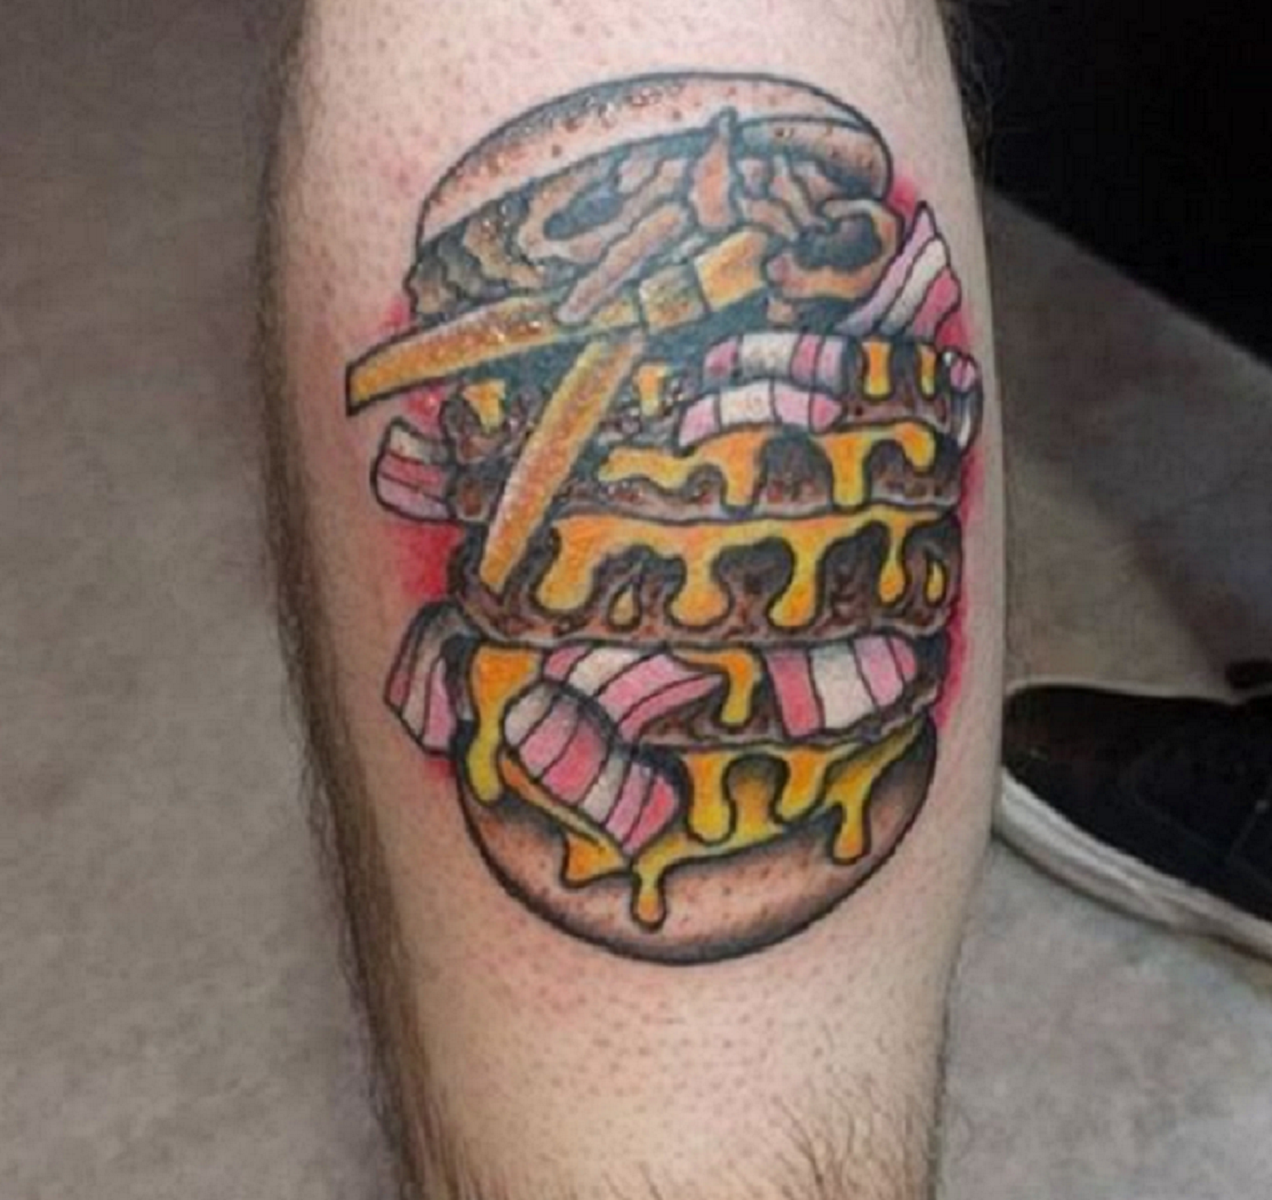 Tatua’t una hamburguesa a mida real i menja’n gratis per sempre